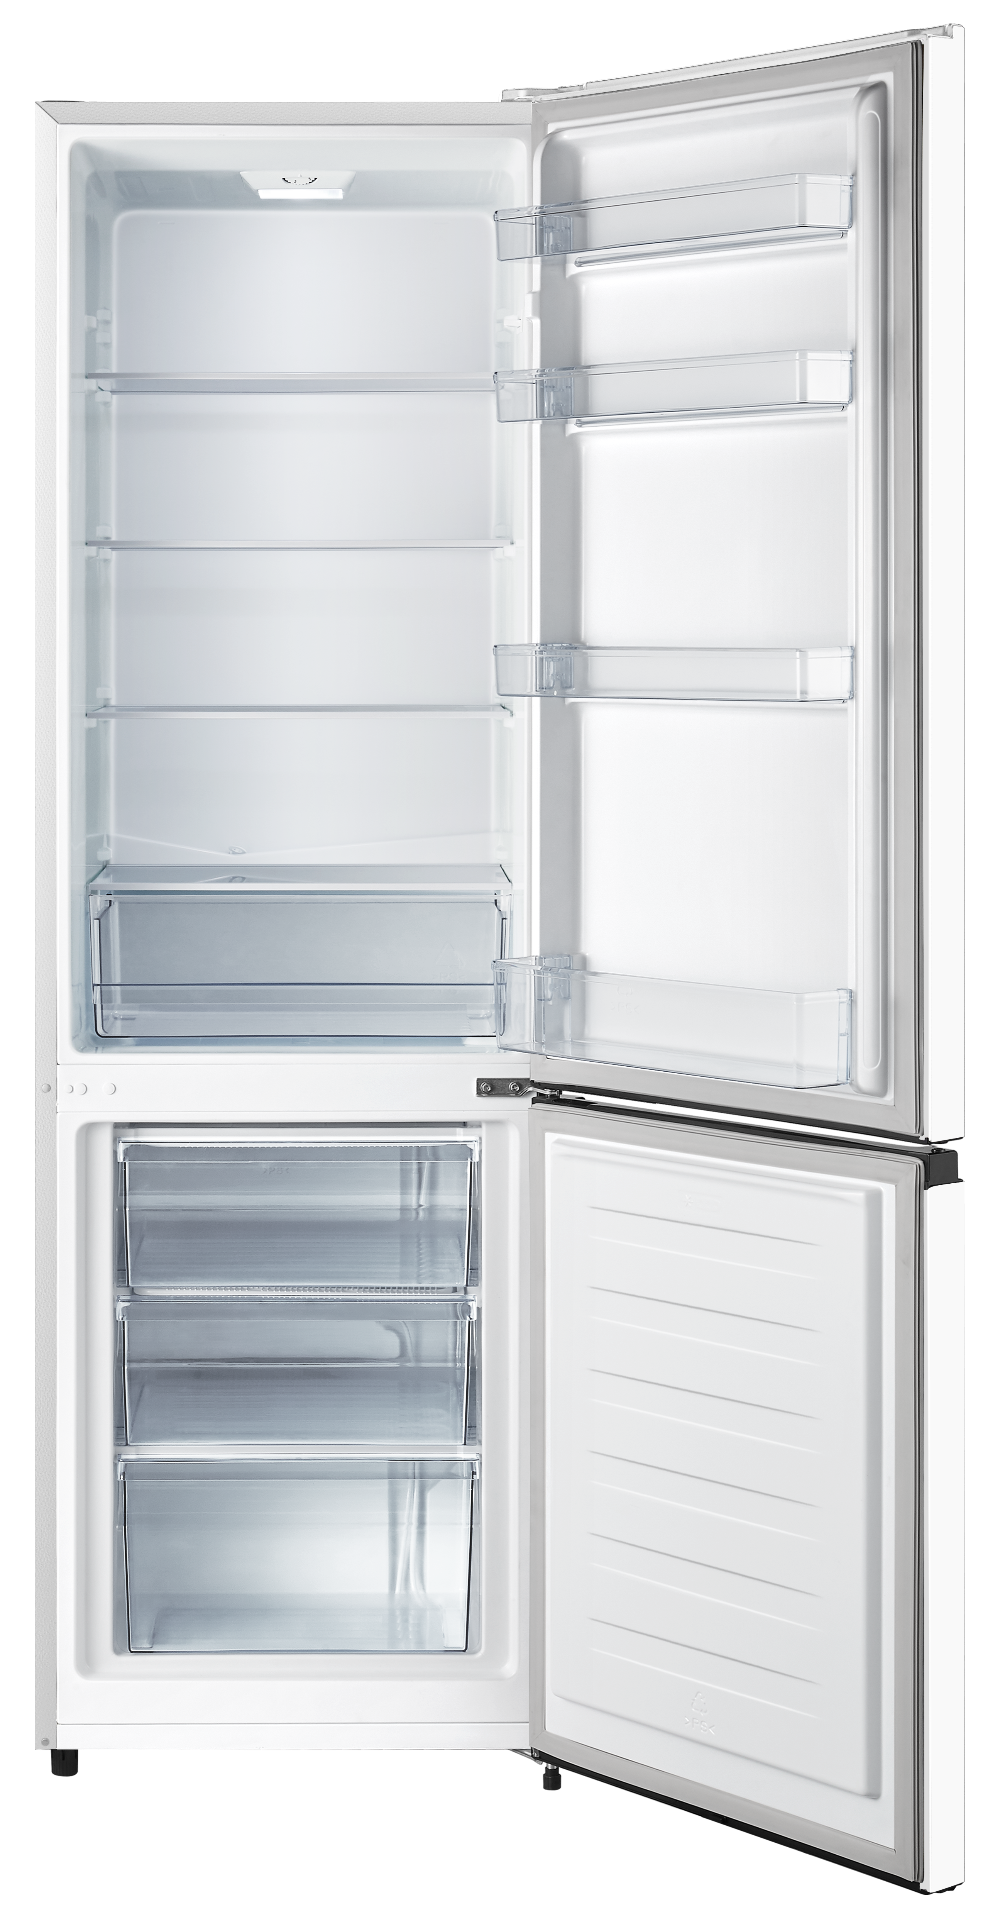 Холодильник Hisense RB-343D4CW1, белый